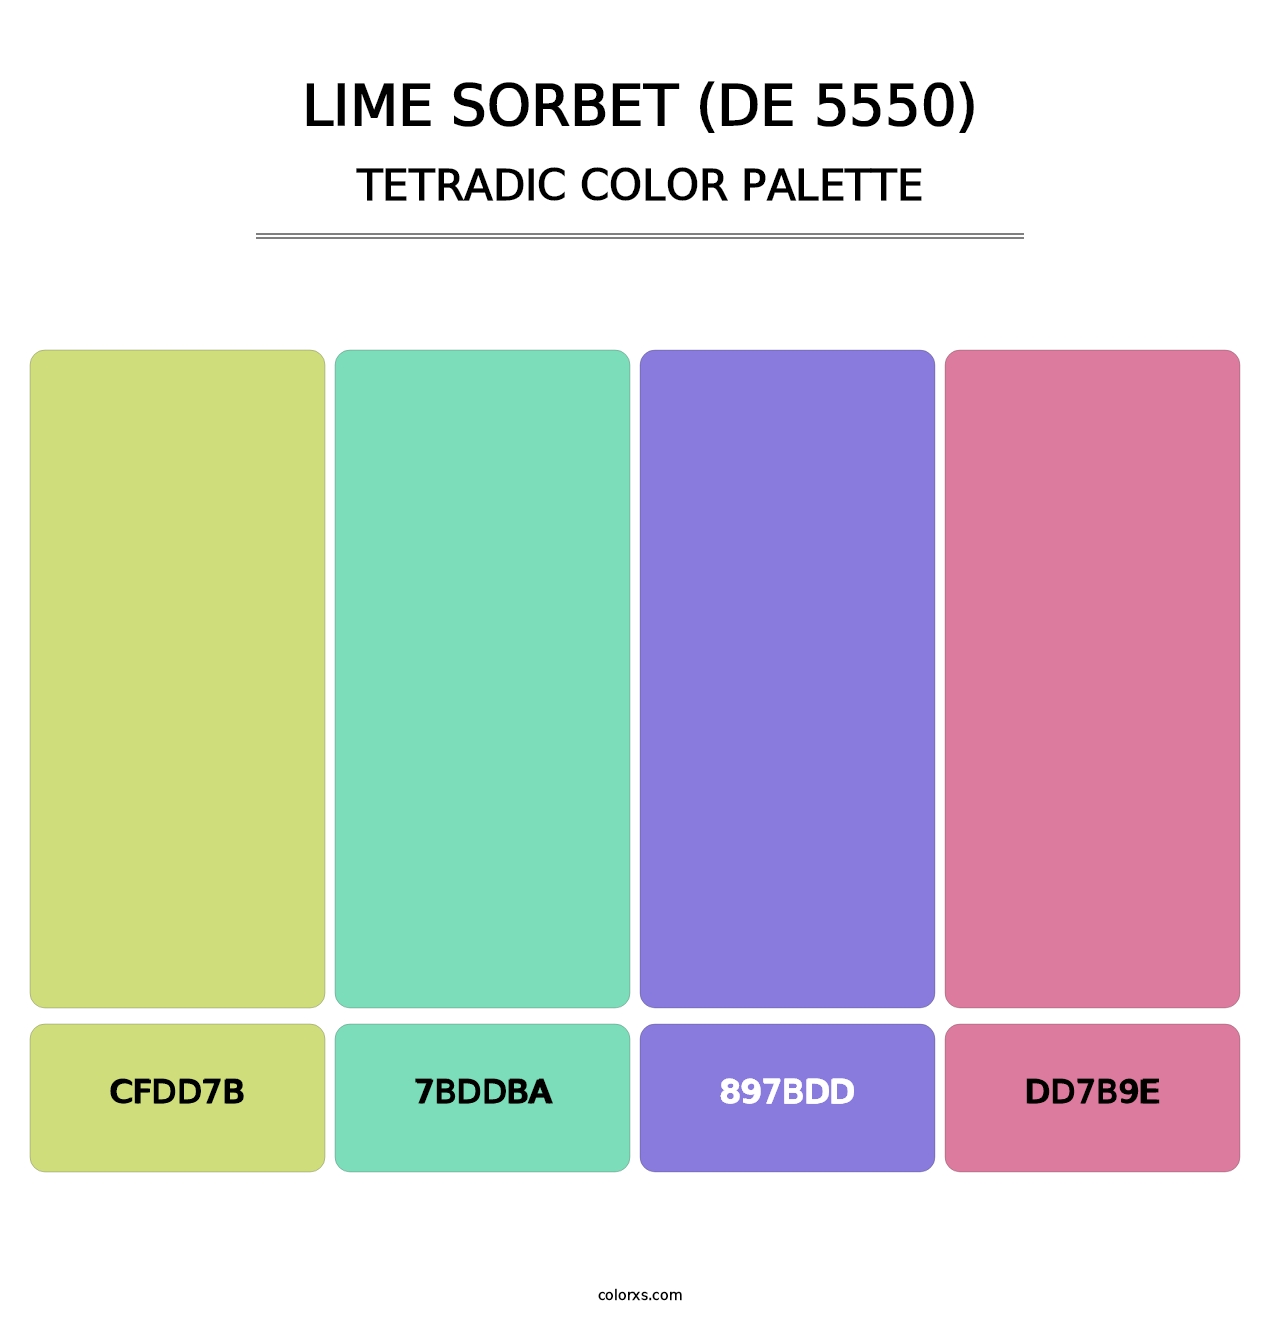 Lime Sorbet (DE 5550) - Tetradic Color Palette